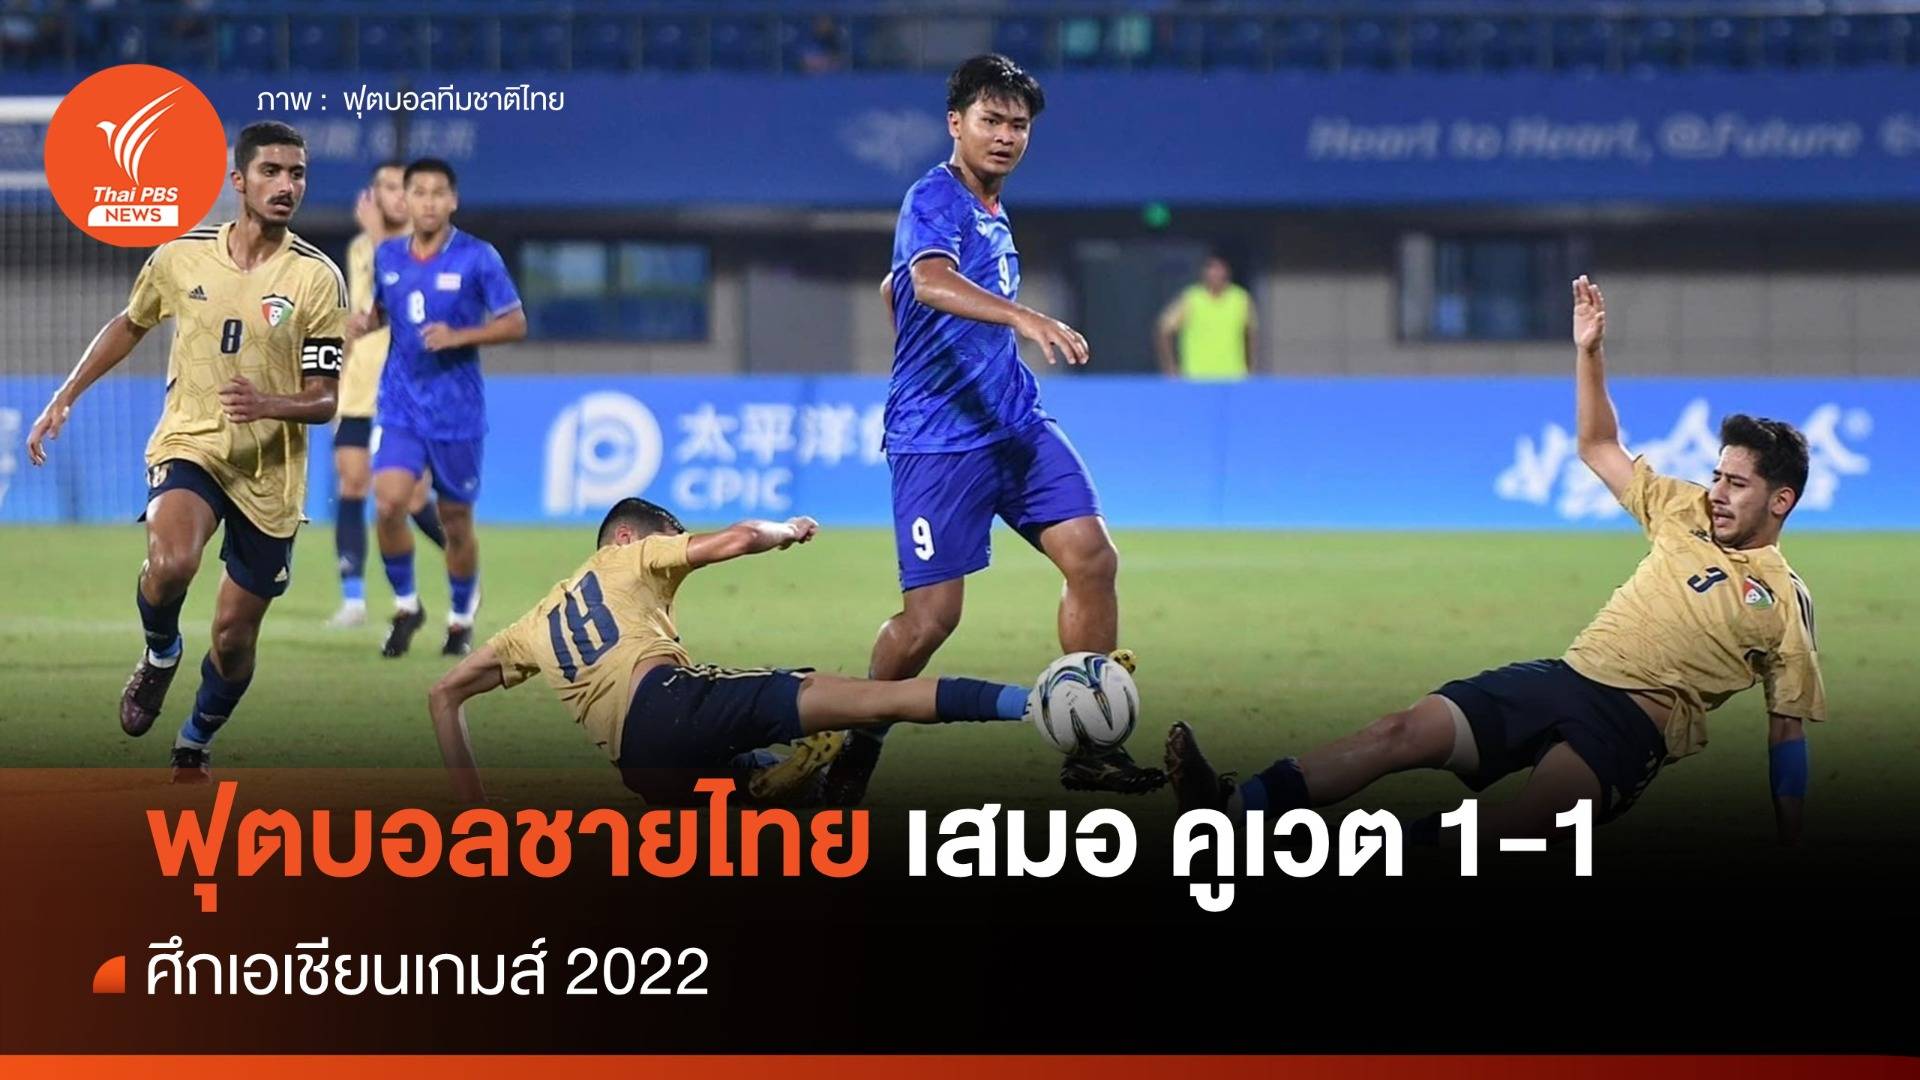 ฟุตบอลชายทีมชาติไทย เสมอ คูเวต 1-1 ศึกเอเชียนเกมส์ 2022